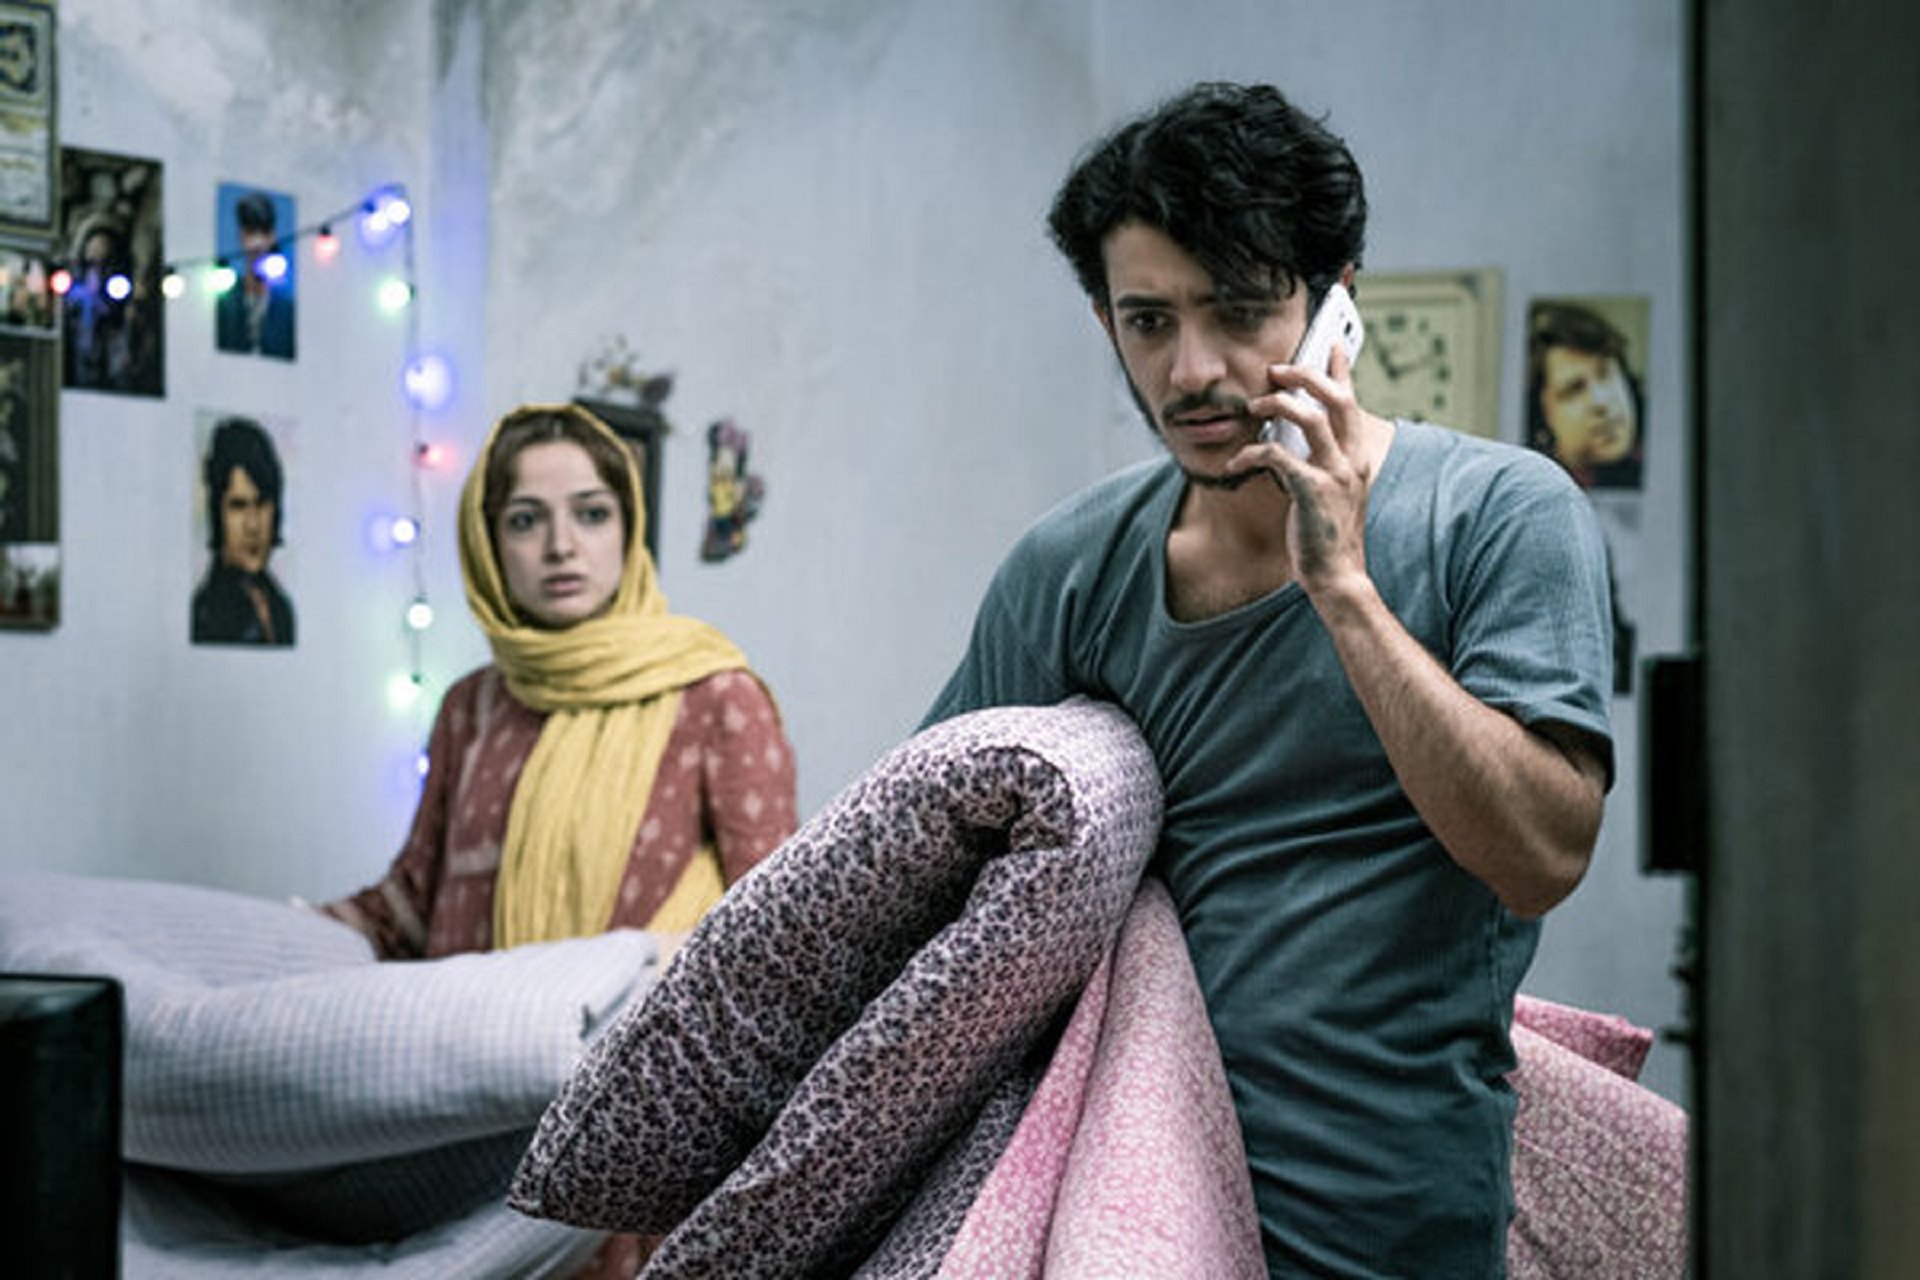 علی شادمان در نقش سهراب در حال صحبت کردن با برادر حامد در فیلم مردن در آب مطهر